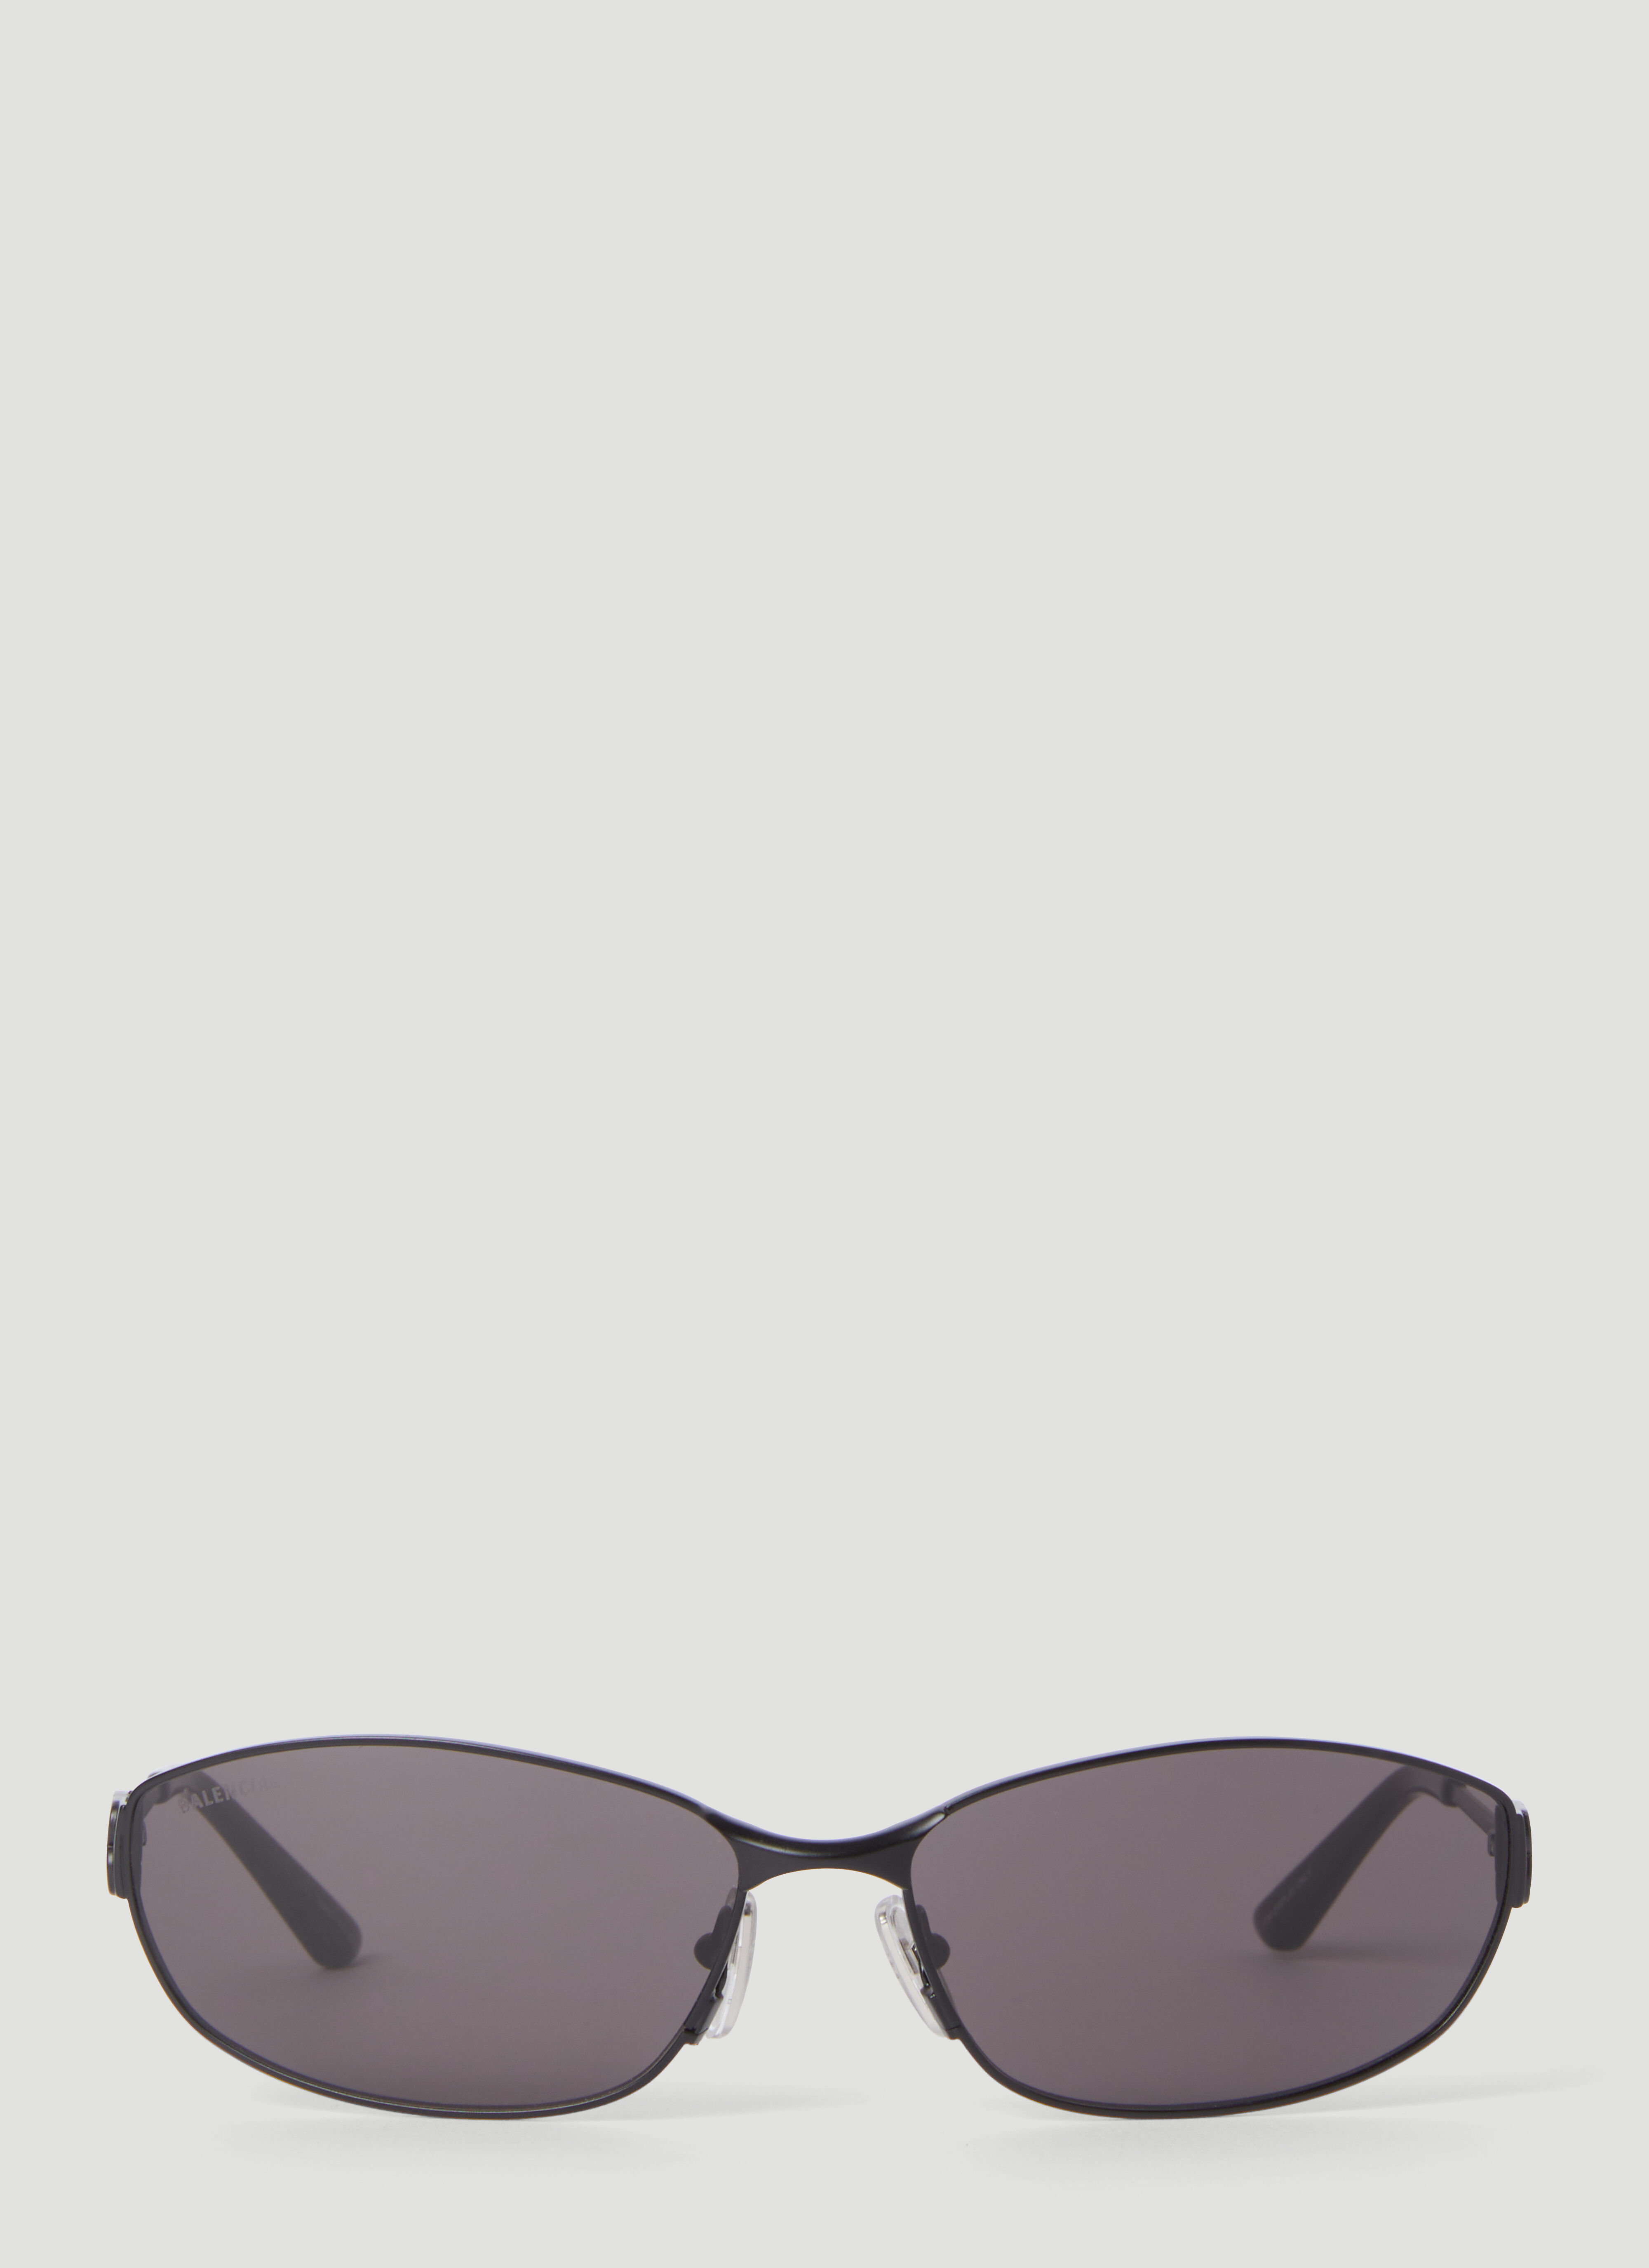 Gucci Mercury Oval Sunglasses Black gus0156002